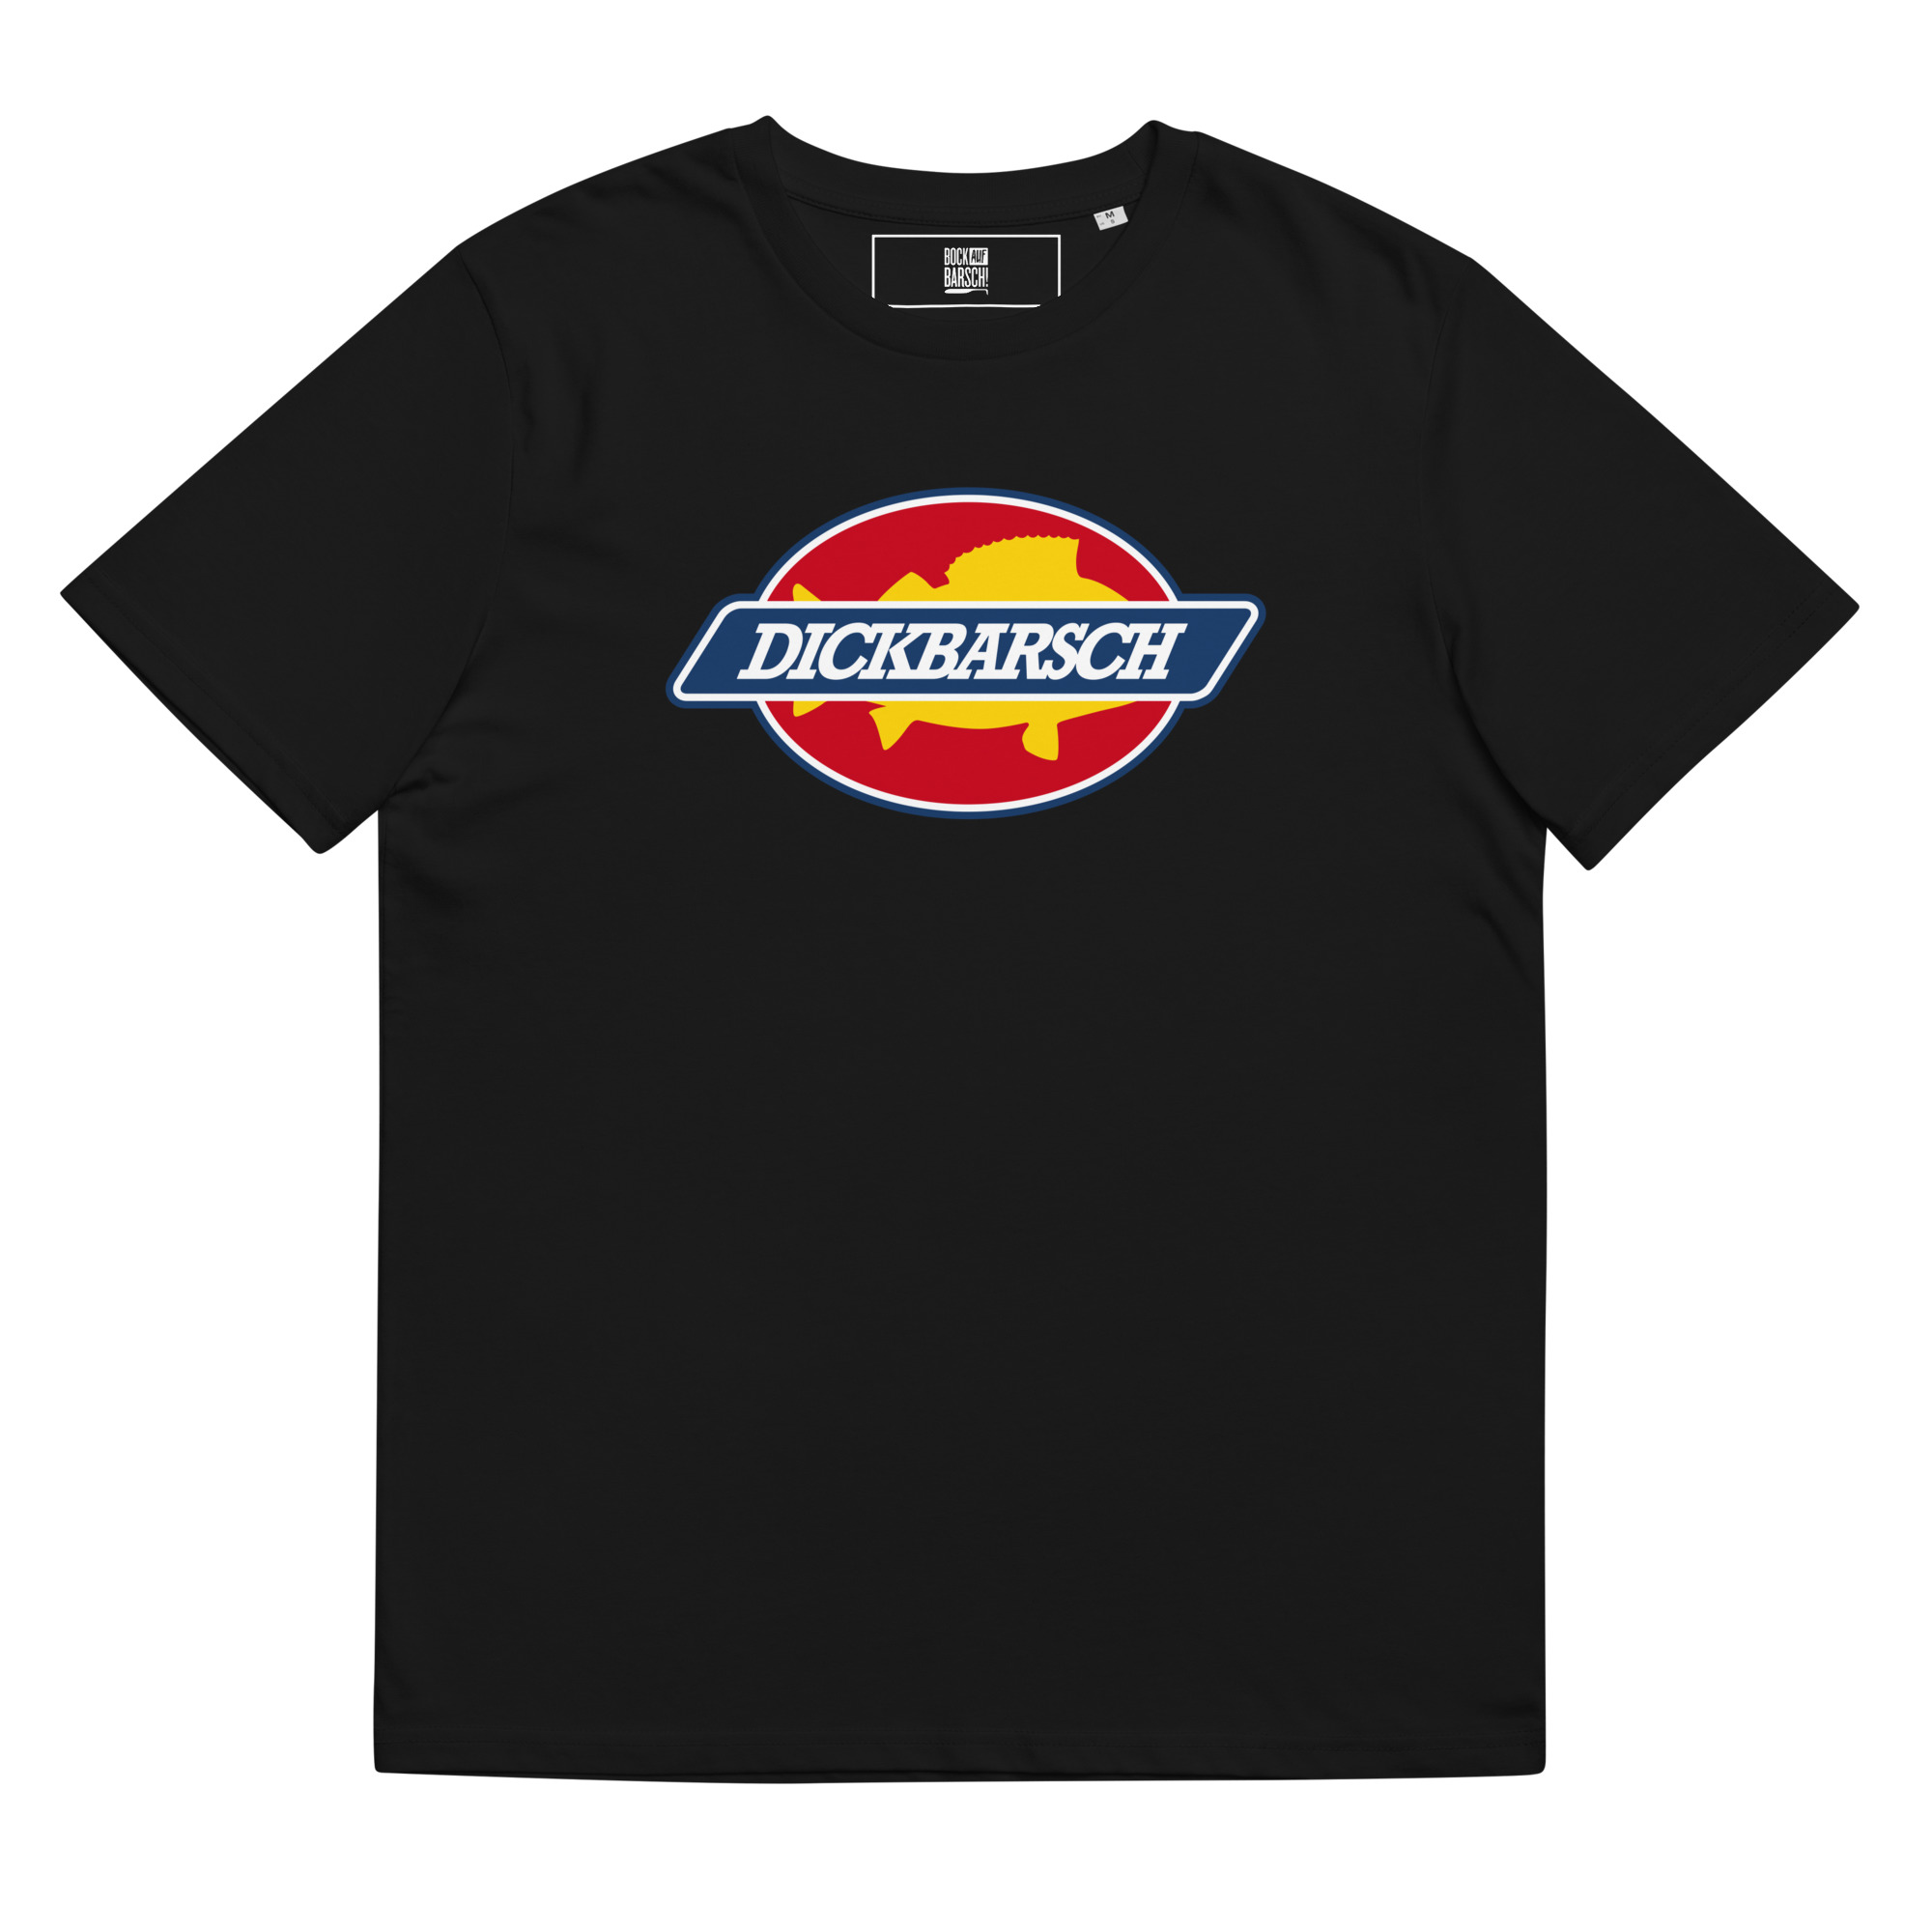 unisex-organic-cotton-t-shirt-black-front-65365a73a63d5.jpg